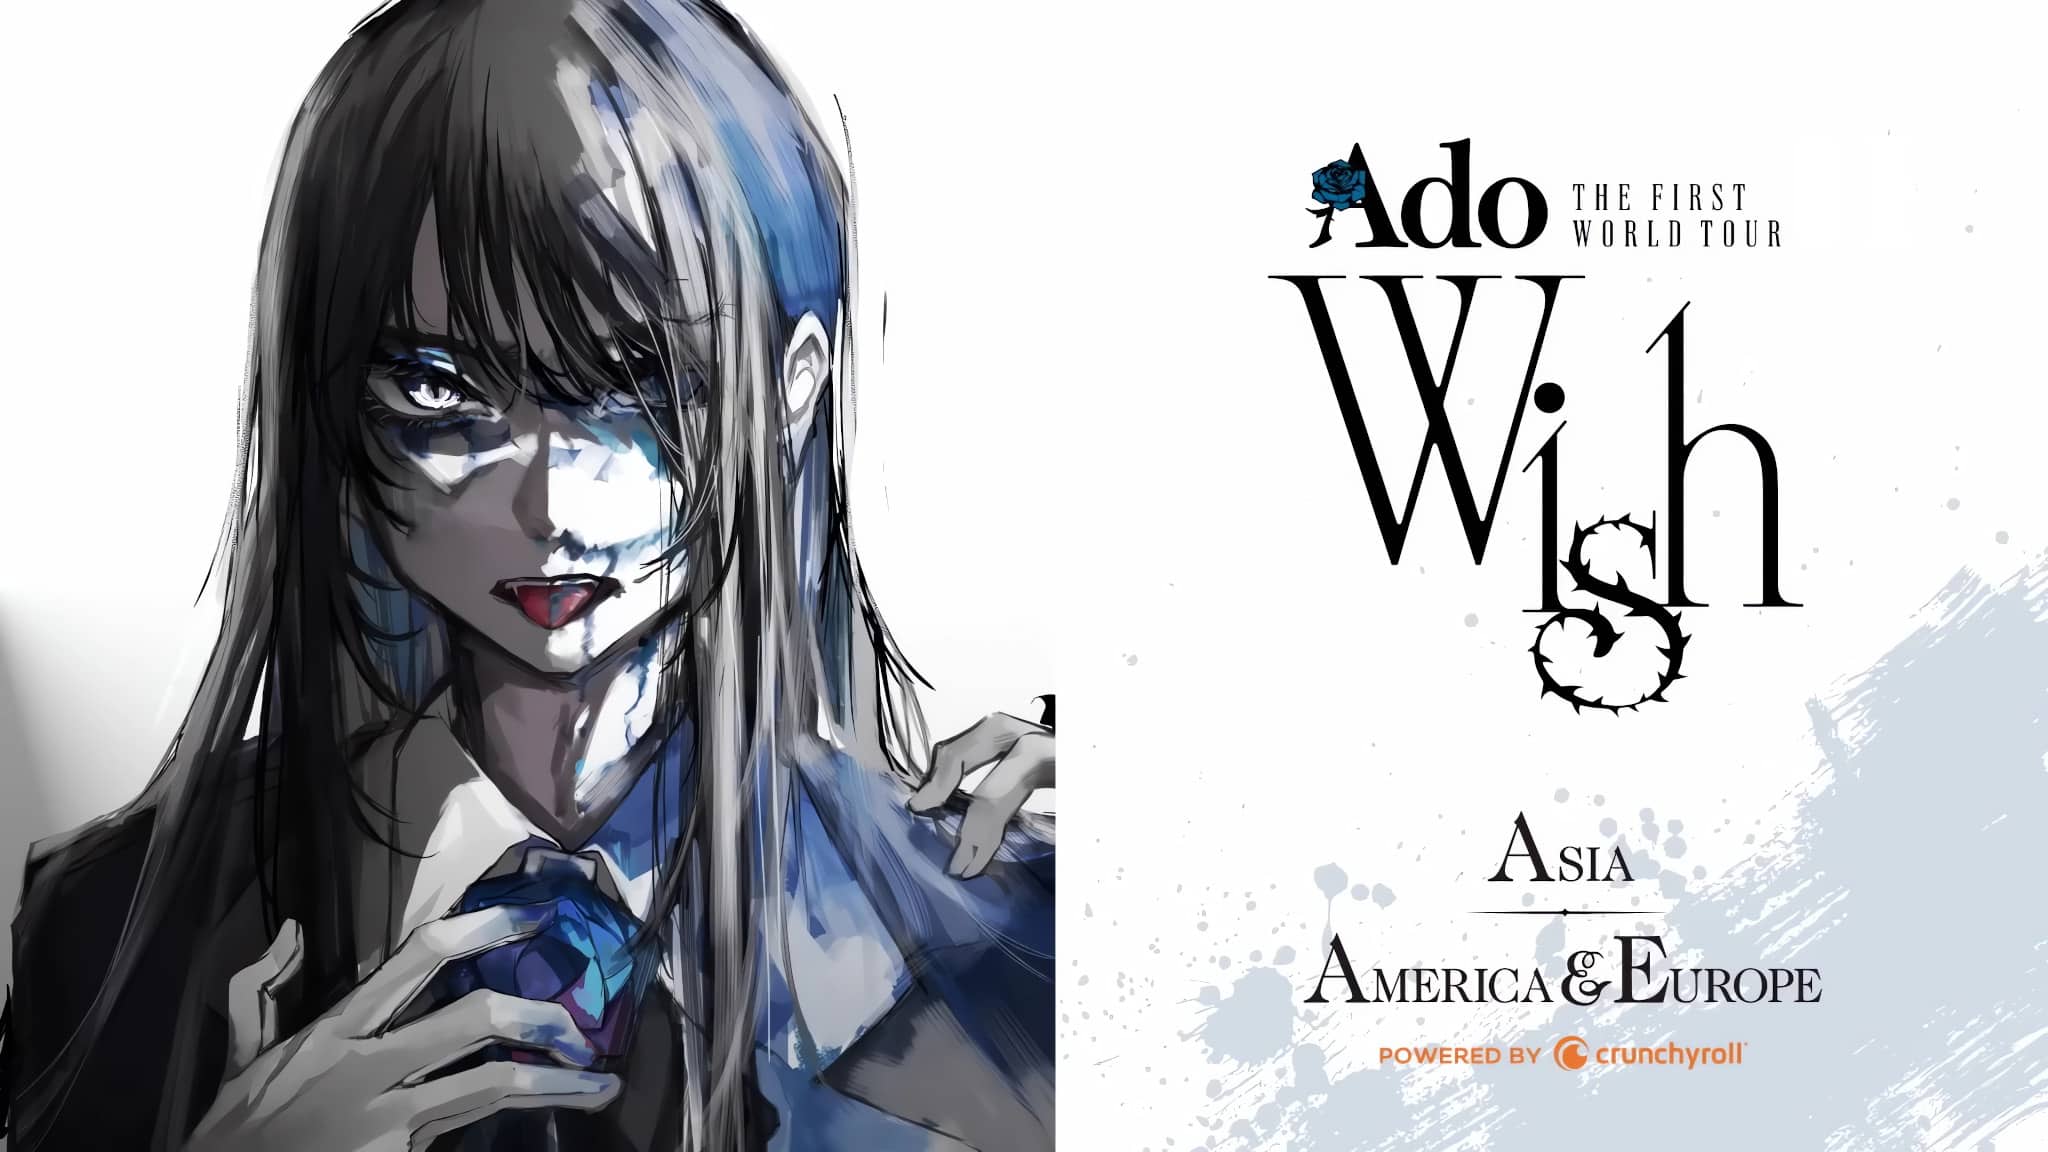 Annonce de la date du concert en France de la chanteuse japonaise Ado lors de sa tournée mondiale "Wish"